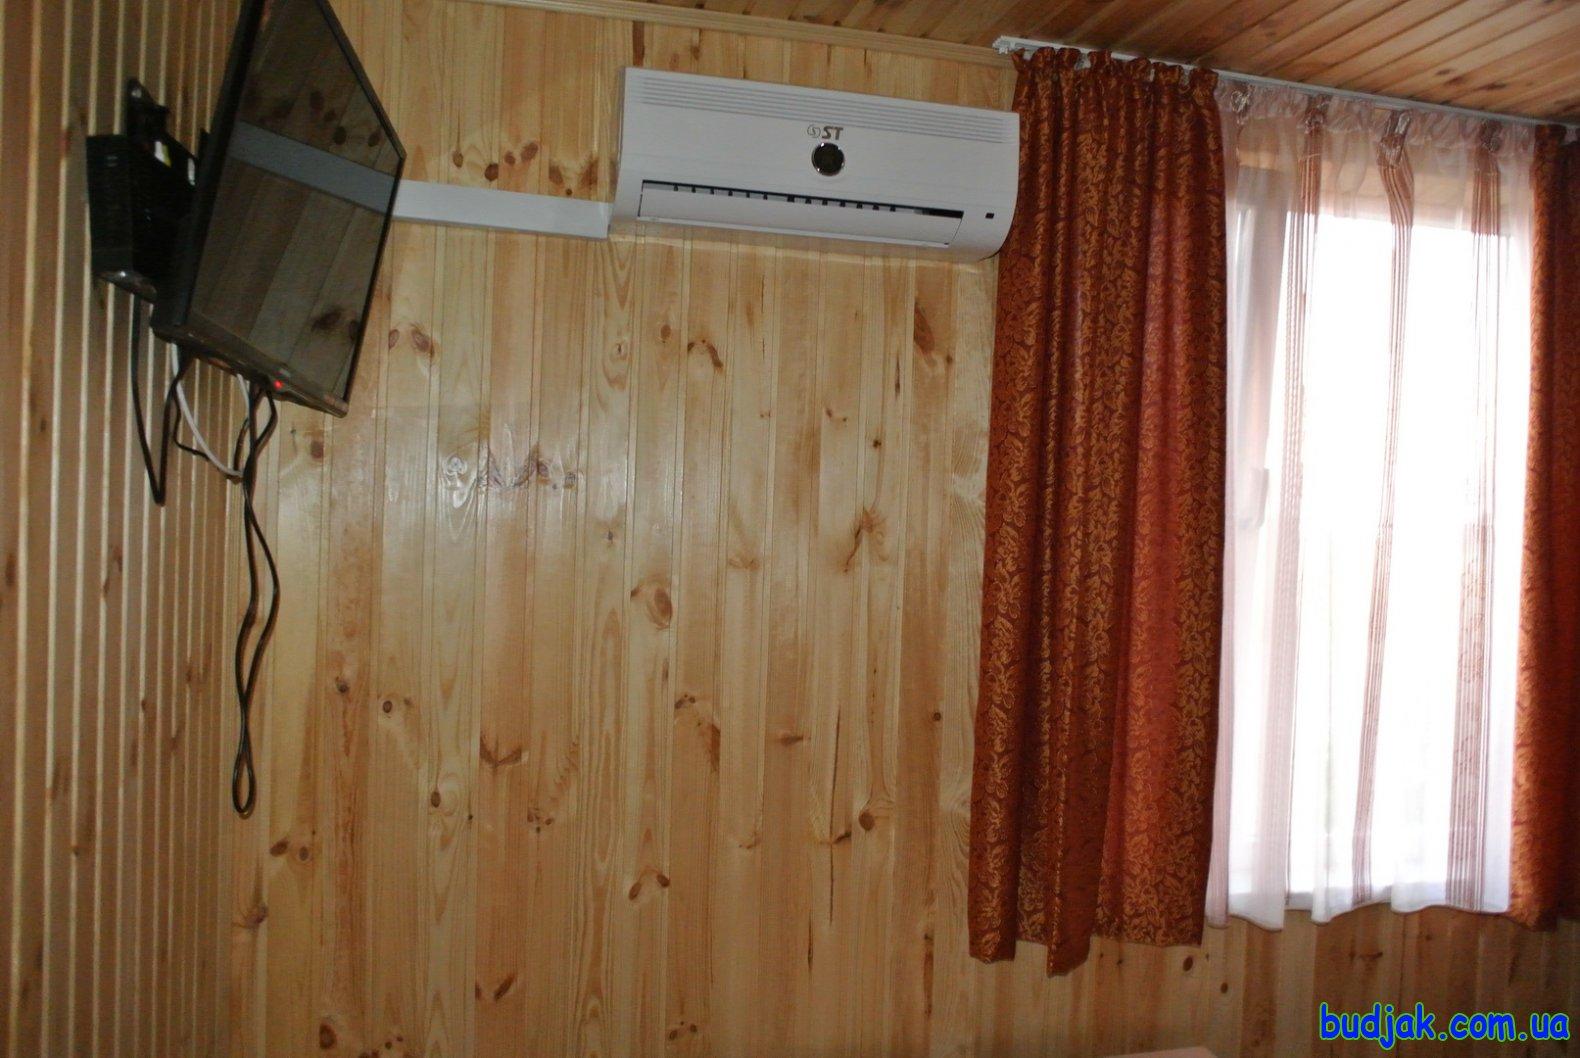 Частный коттедж отдыха «Усадьба» на курорте Приморское. Фото № 10282